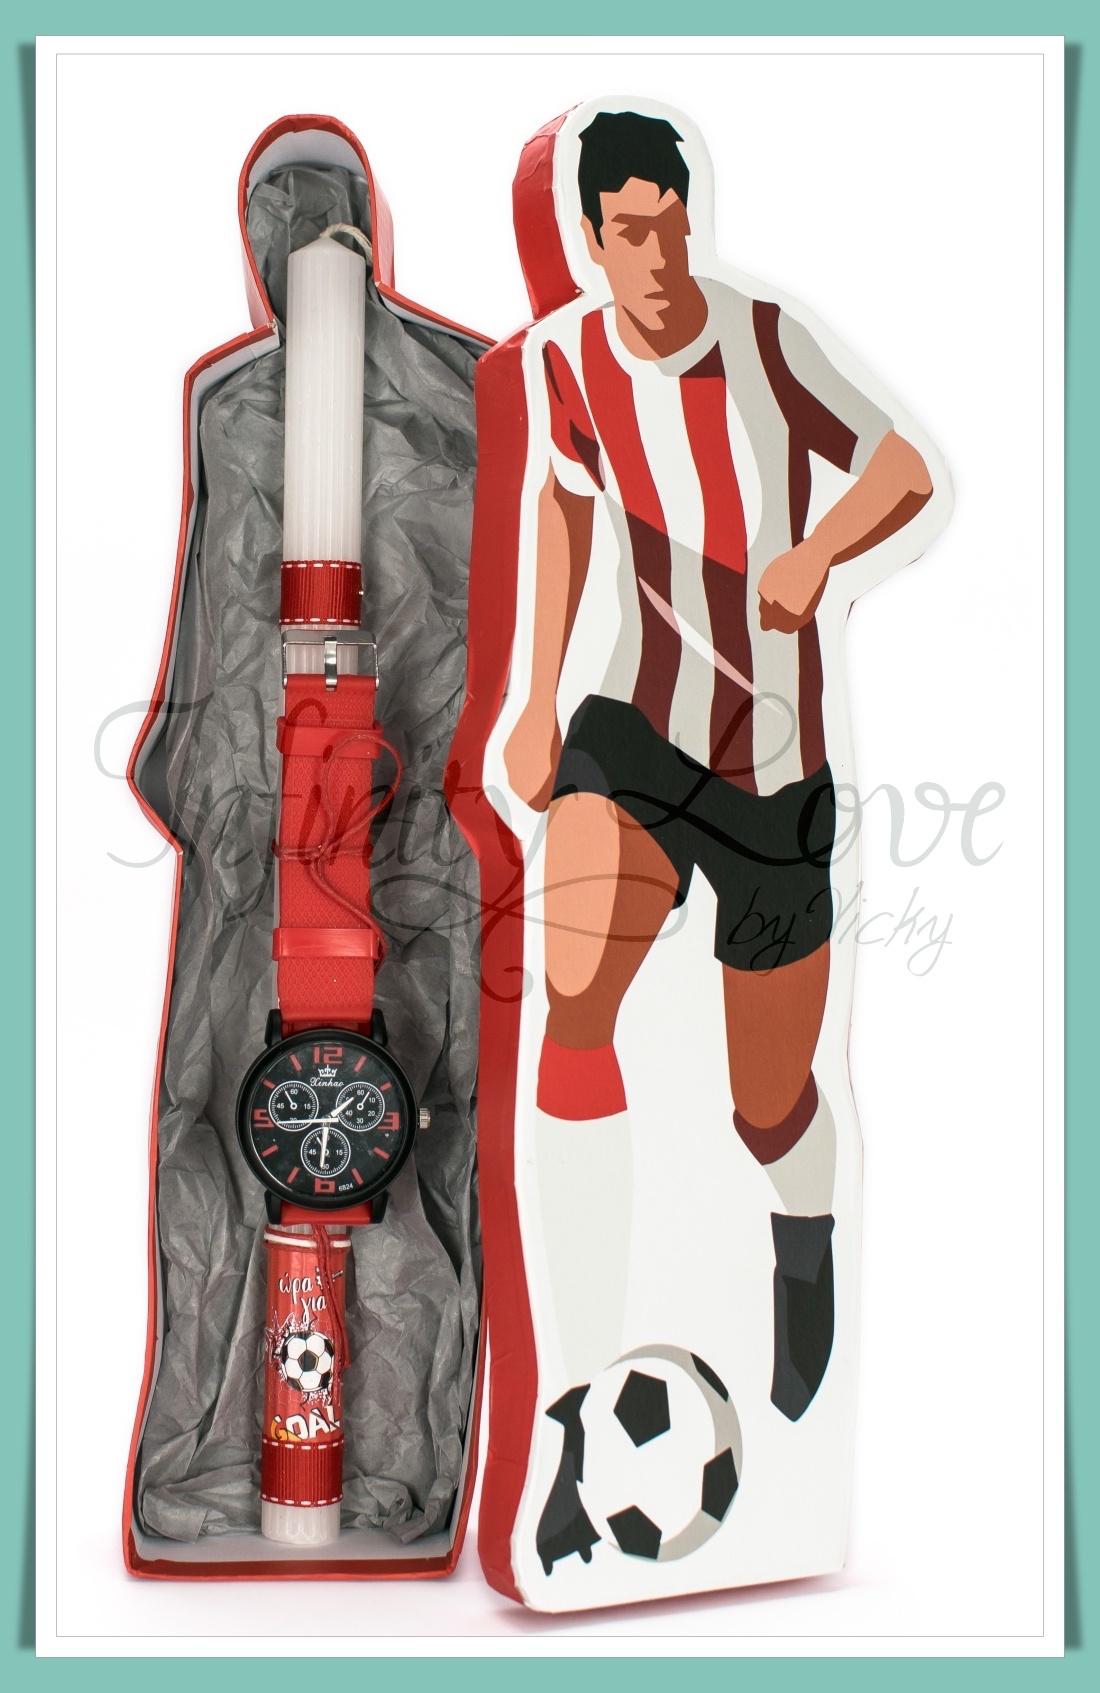 (120-1) Λαμπάδα με ποδοσφαιρικό ρολόι κόκκινο